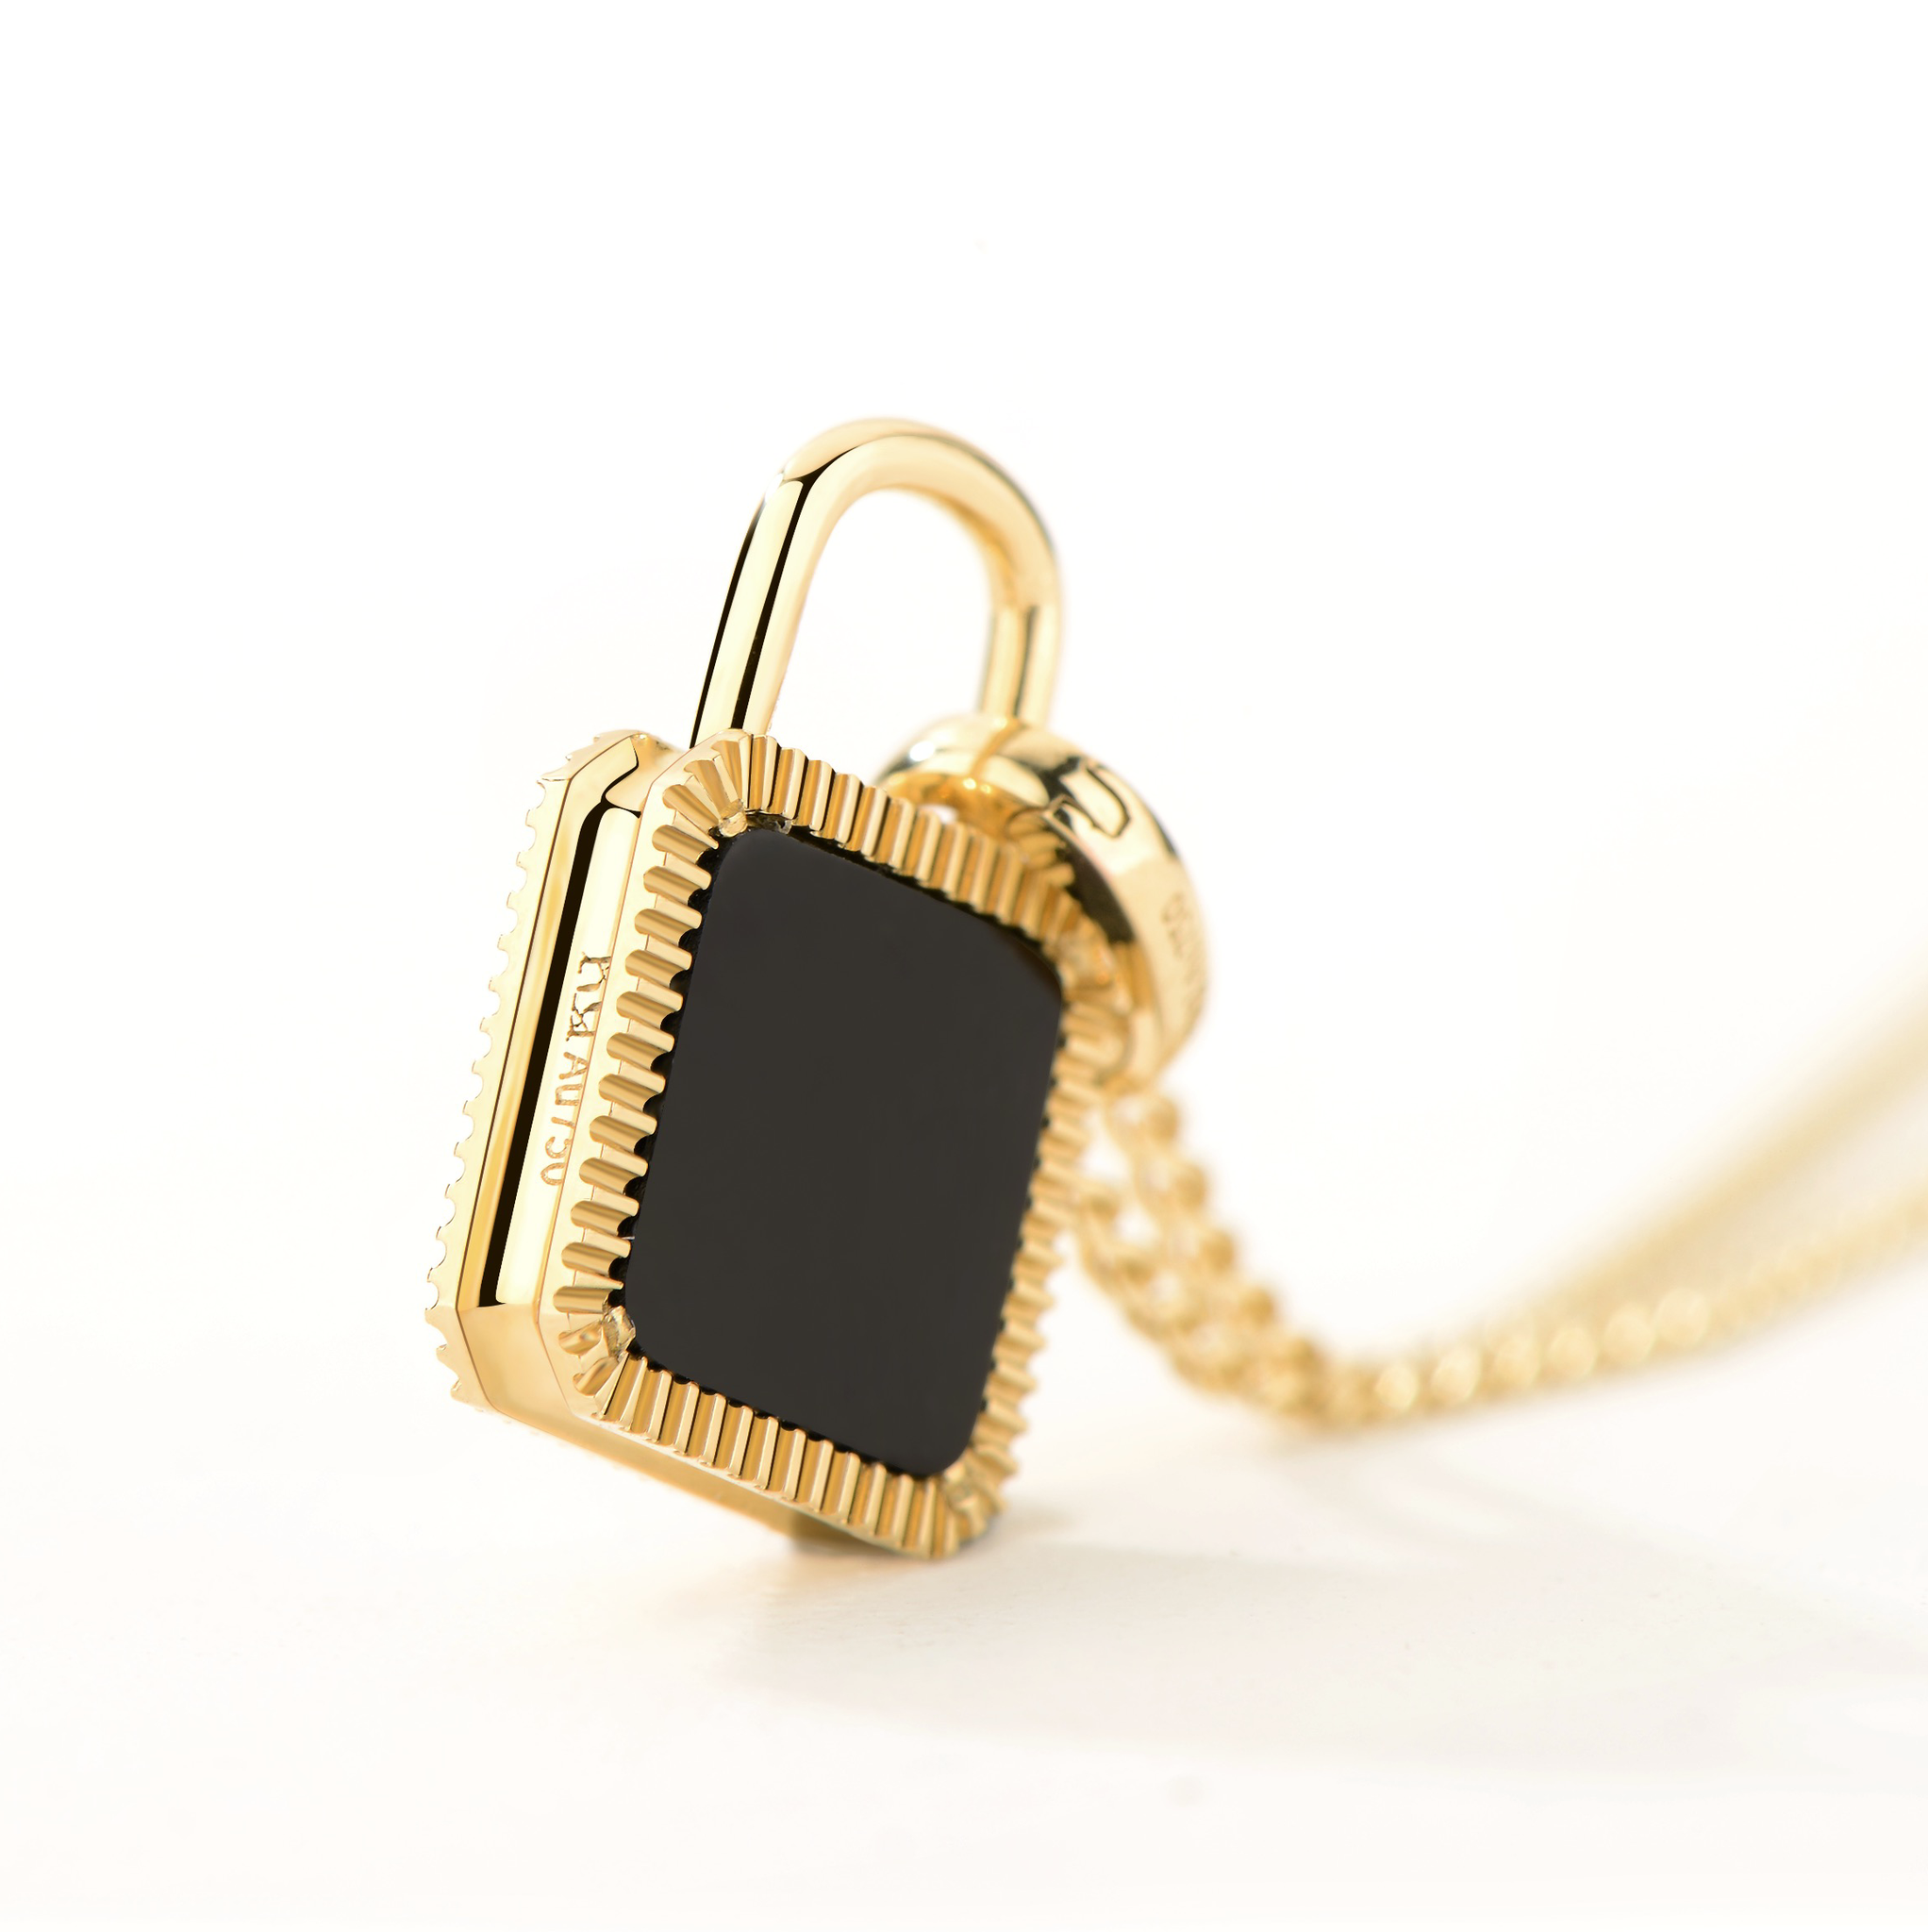 Unlock-18K Double-Sided Lock Gold Pendant